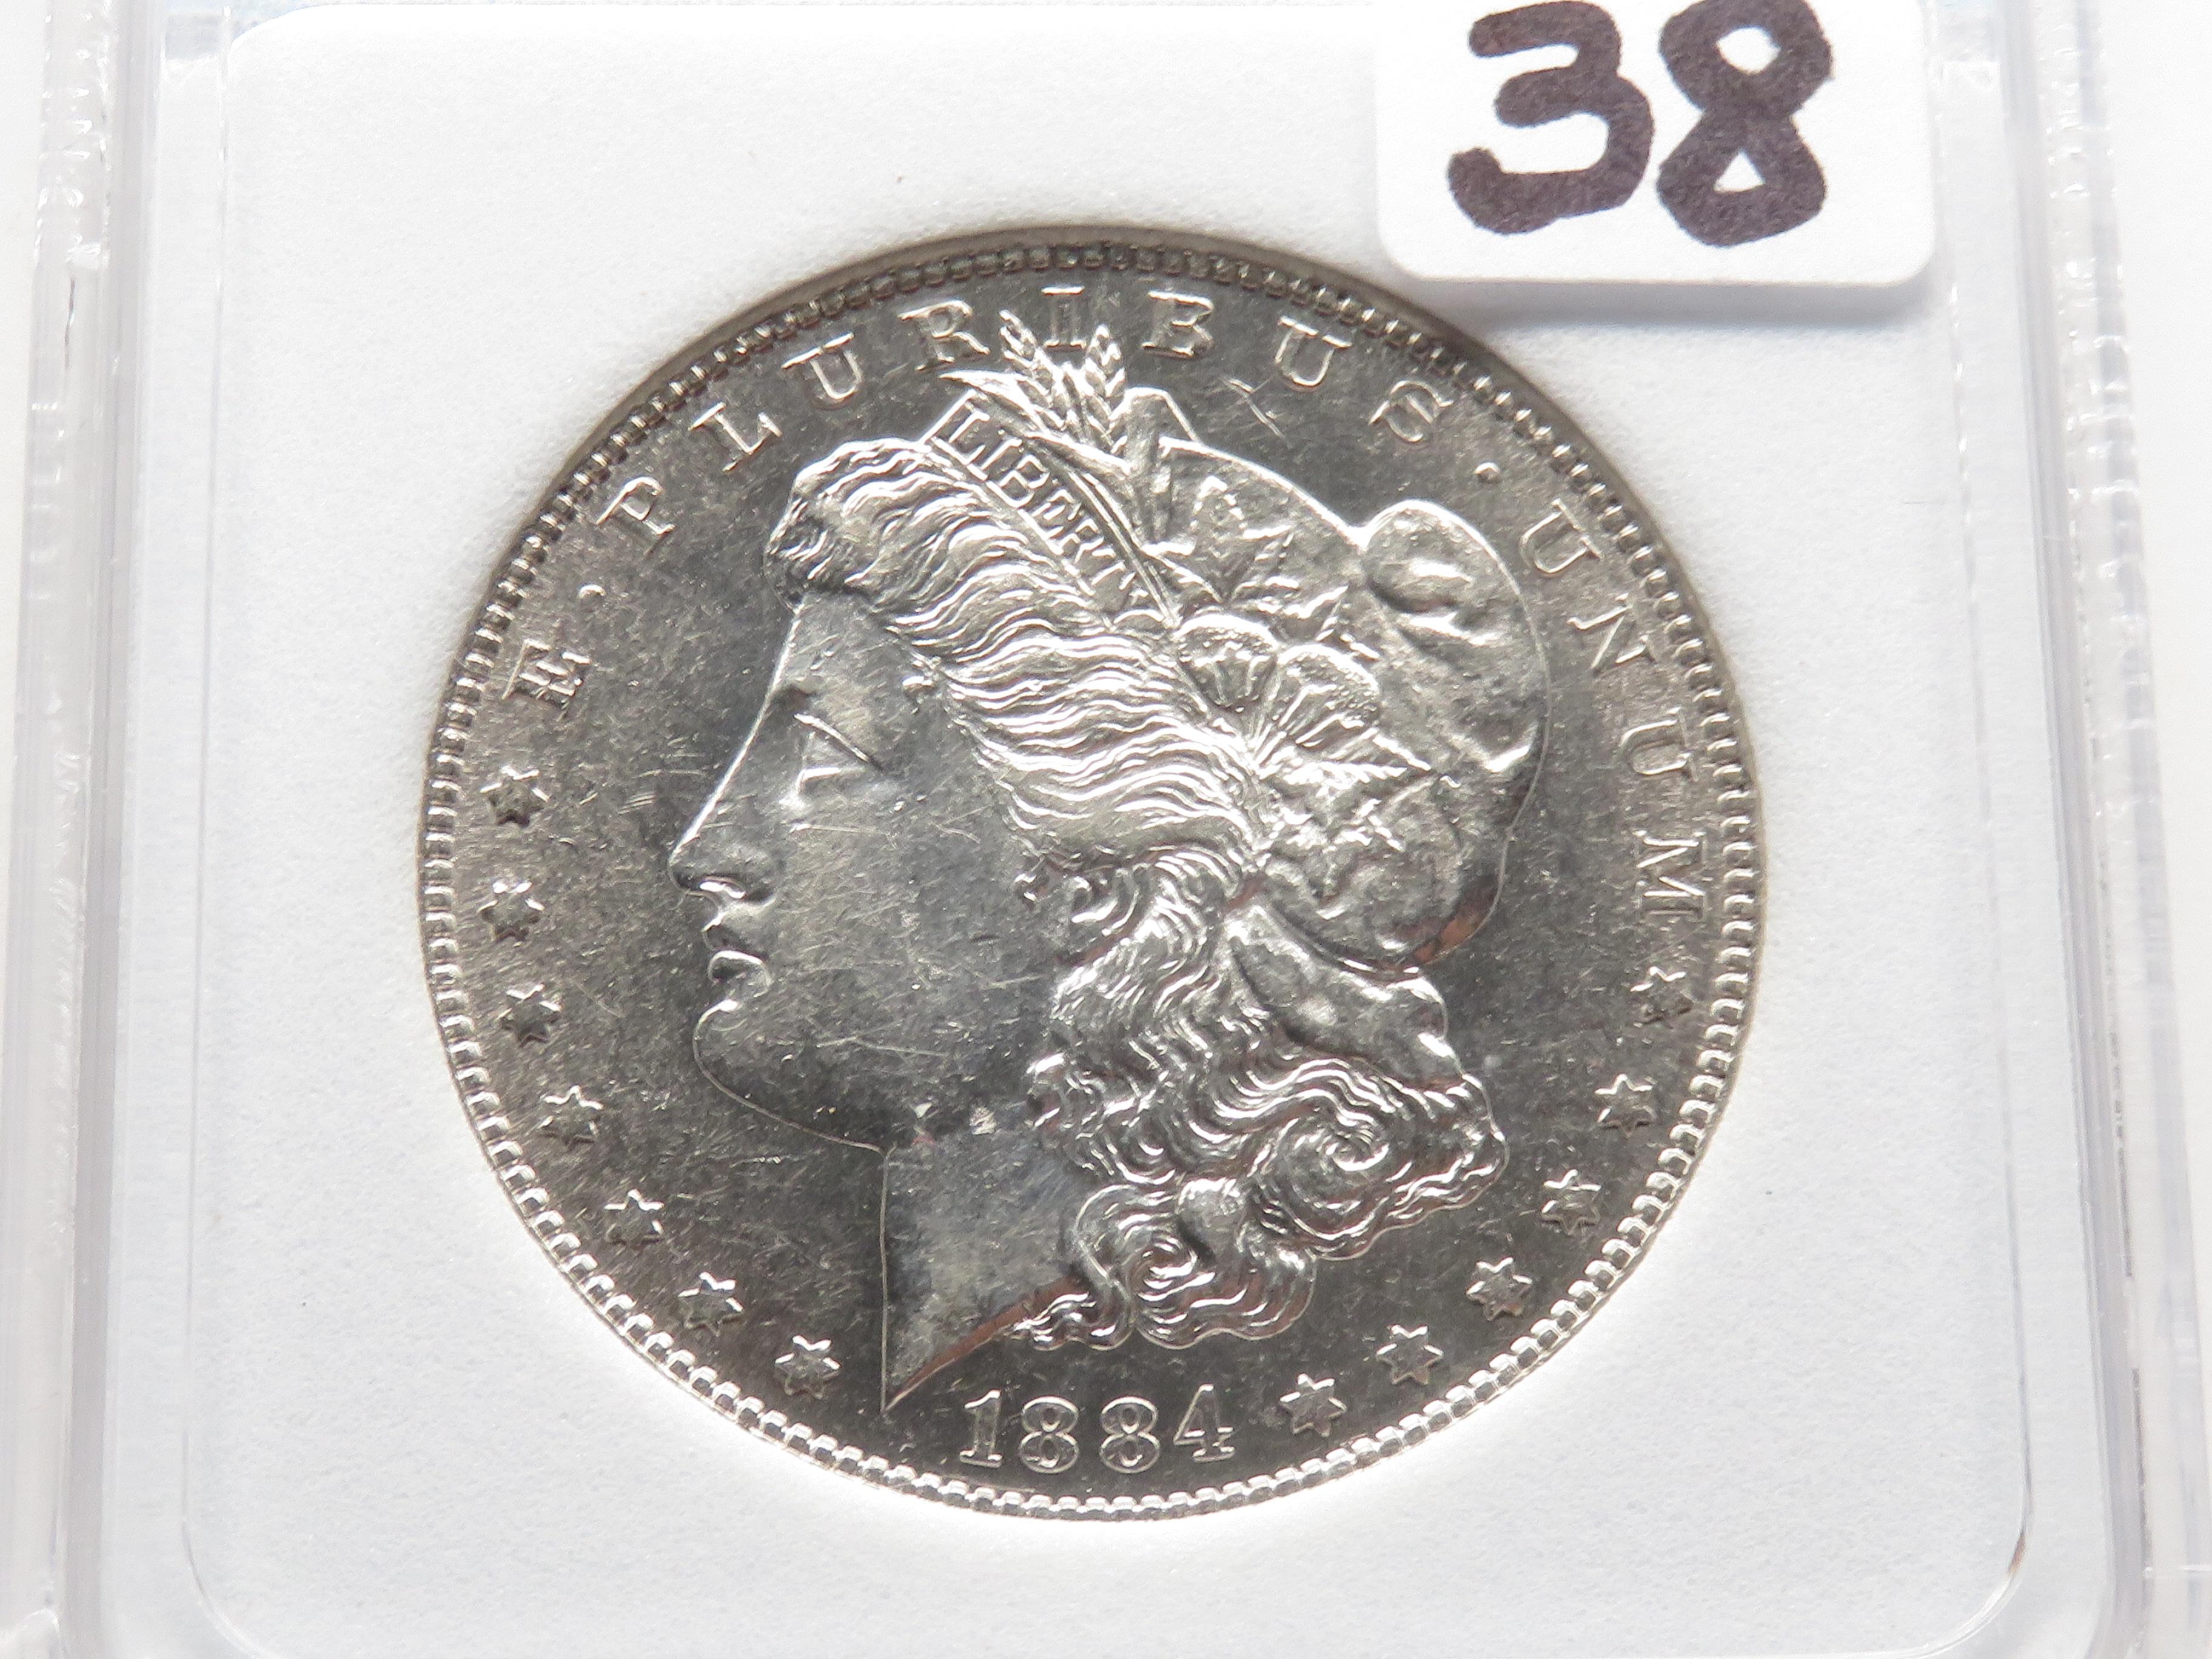 Morgan $ 1884S NNC MS62, rare